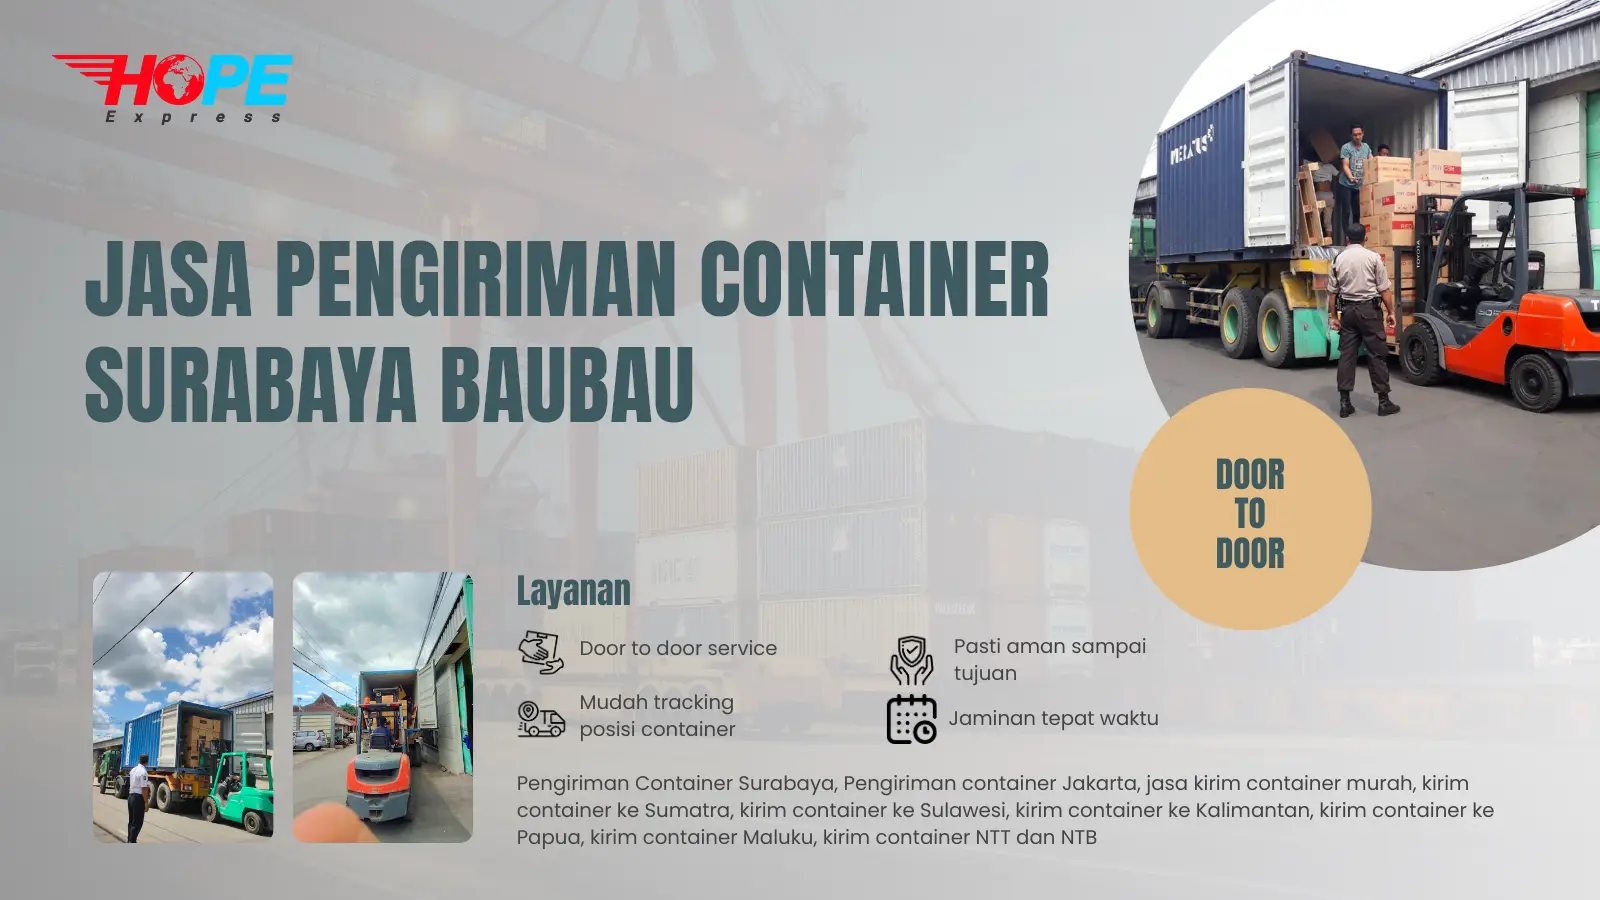 Jasa Pengiriman Container Surabaya Baubau